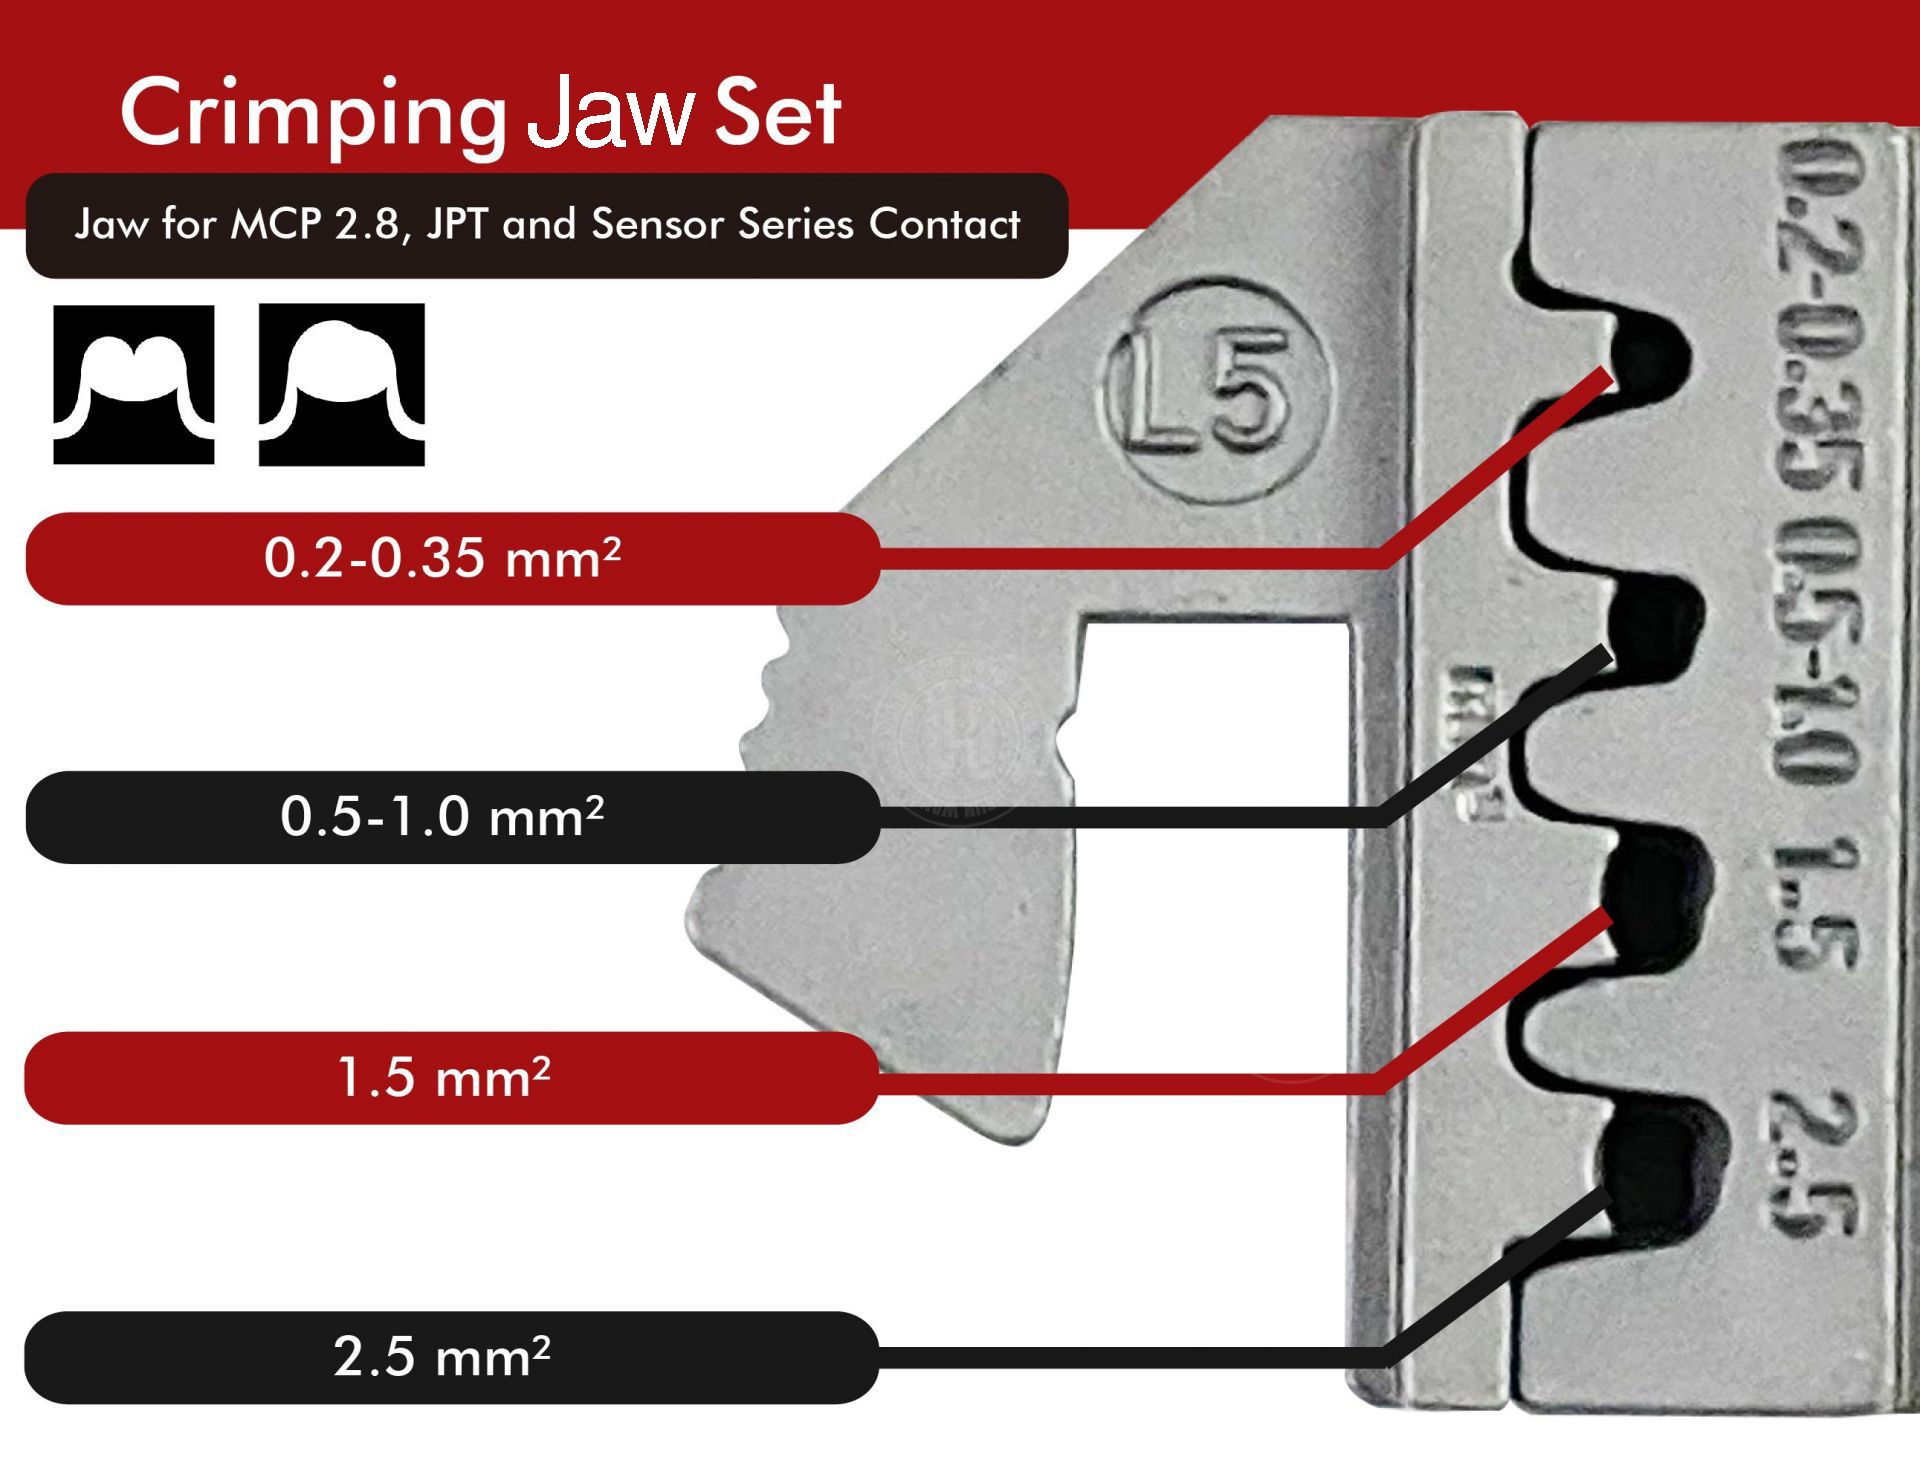 J12JL5-Jaw-crimp-crimping-crimp tool-crimping tool-crimp wire-ferrule crimp-ratchet crimp-Taiwan Manufacturer-hsunwang-licrim-hsunwang.com